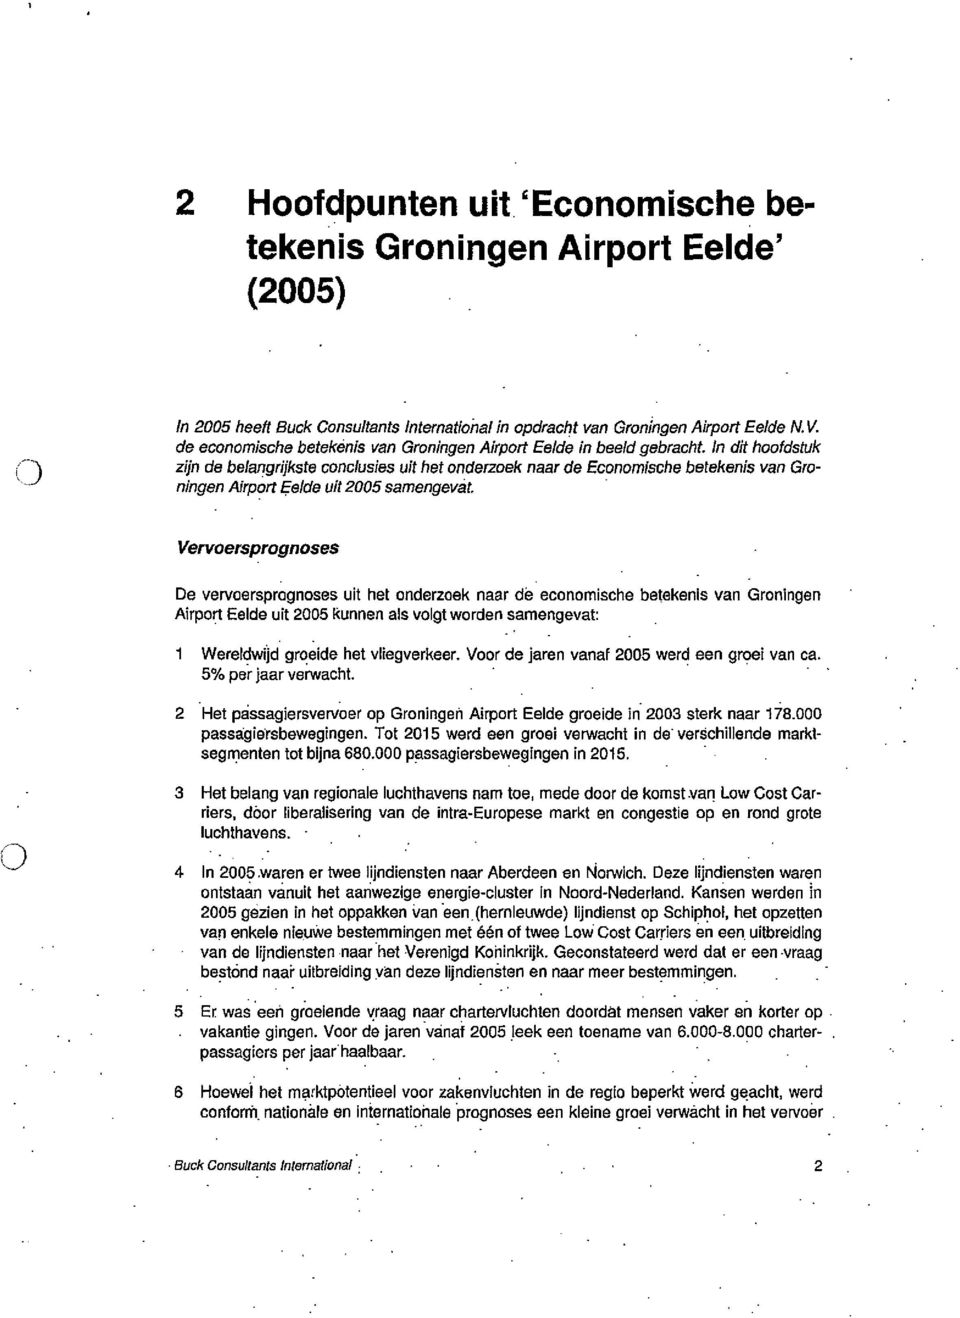 In dit hoofdstuk zlin de belangnjkste conclusfes uit het onderzoek near de Economische betekenis van Groningen Airport Eelde uit 2005 samengevat.